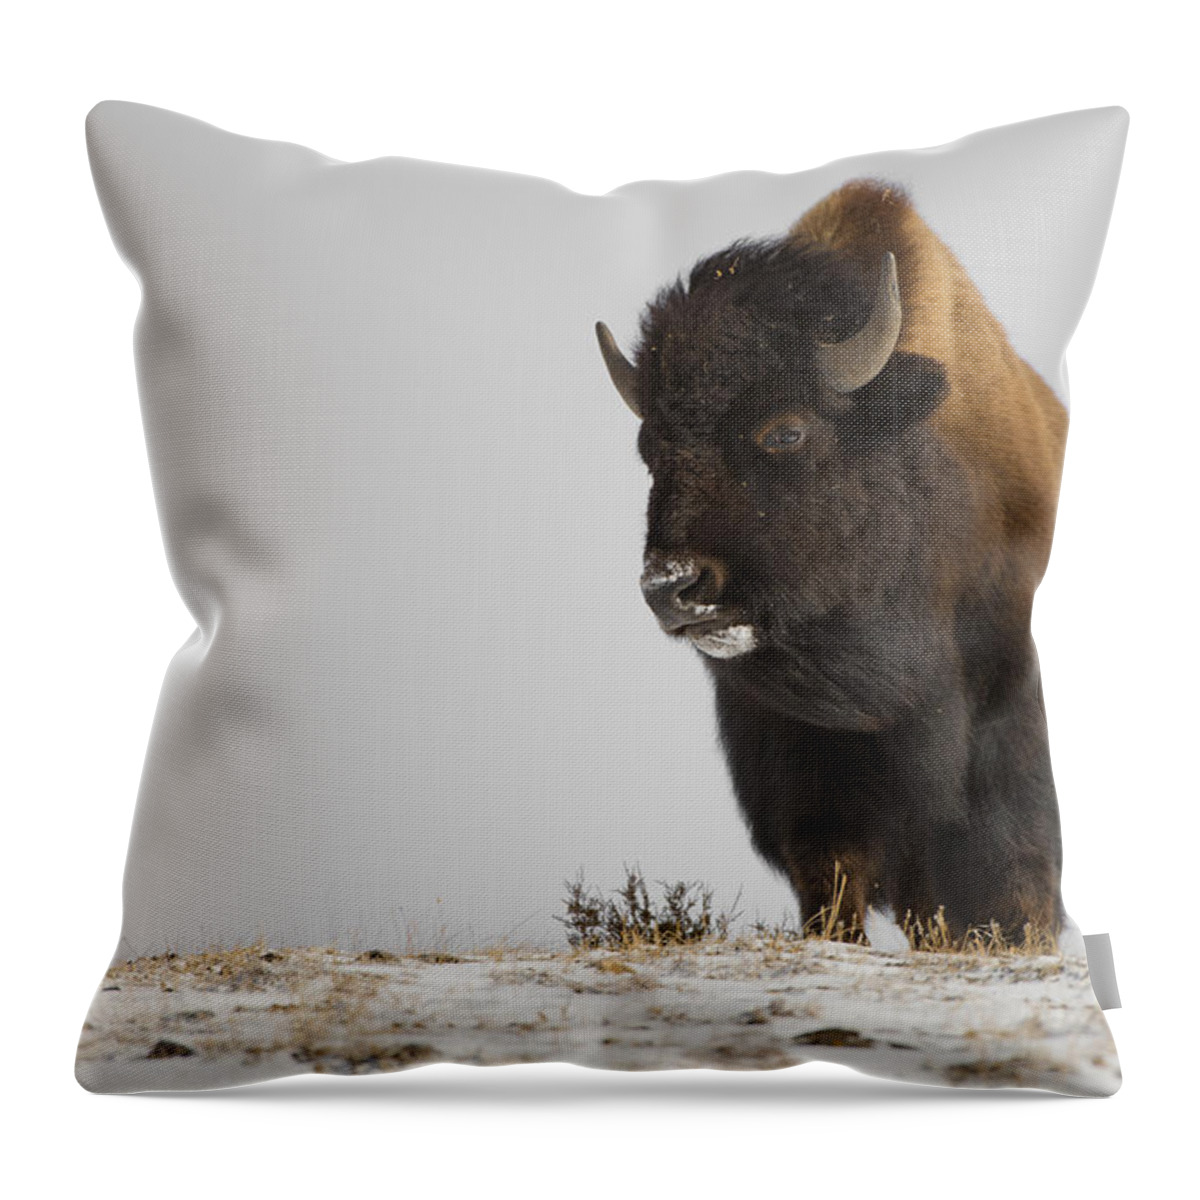 Winter Throw Pillow featuring the photograph Buffalo Leader by Bill Cubitt